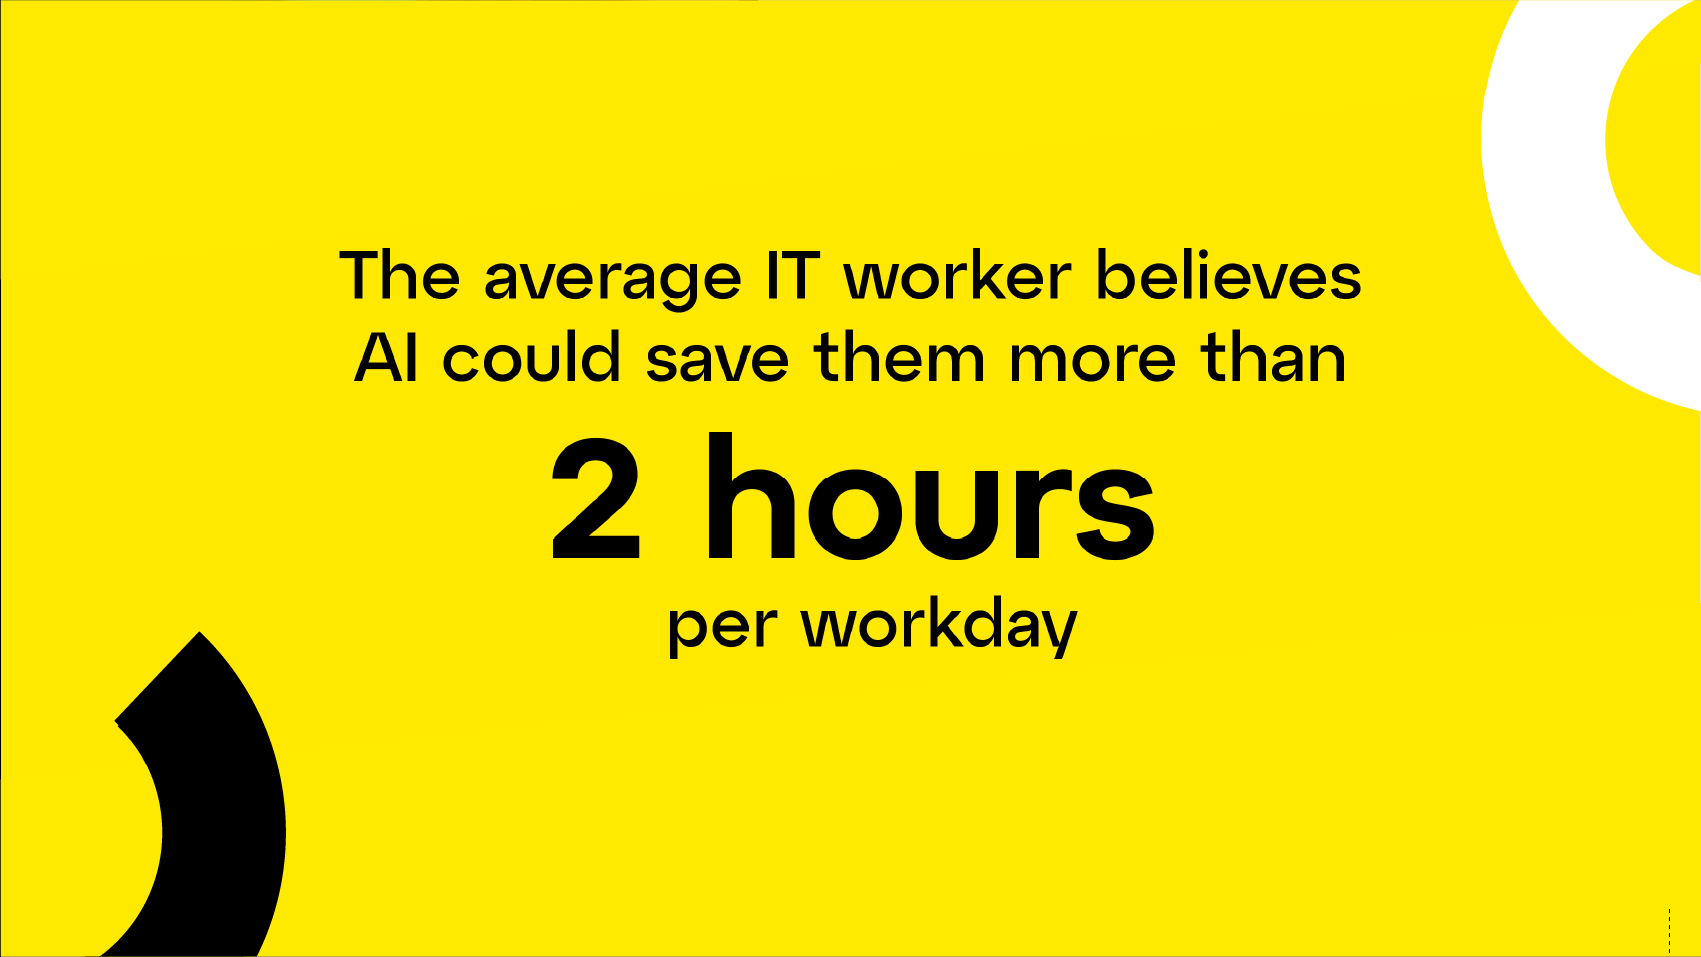 En moyenne, les professionnels de l'informatique estiment que l'IA peut leur permettre de gagner plus de 2 heures de travail par jour.